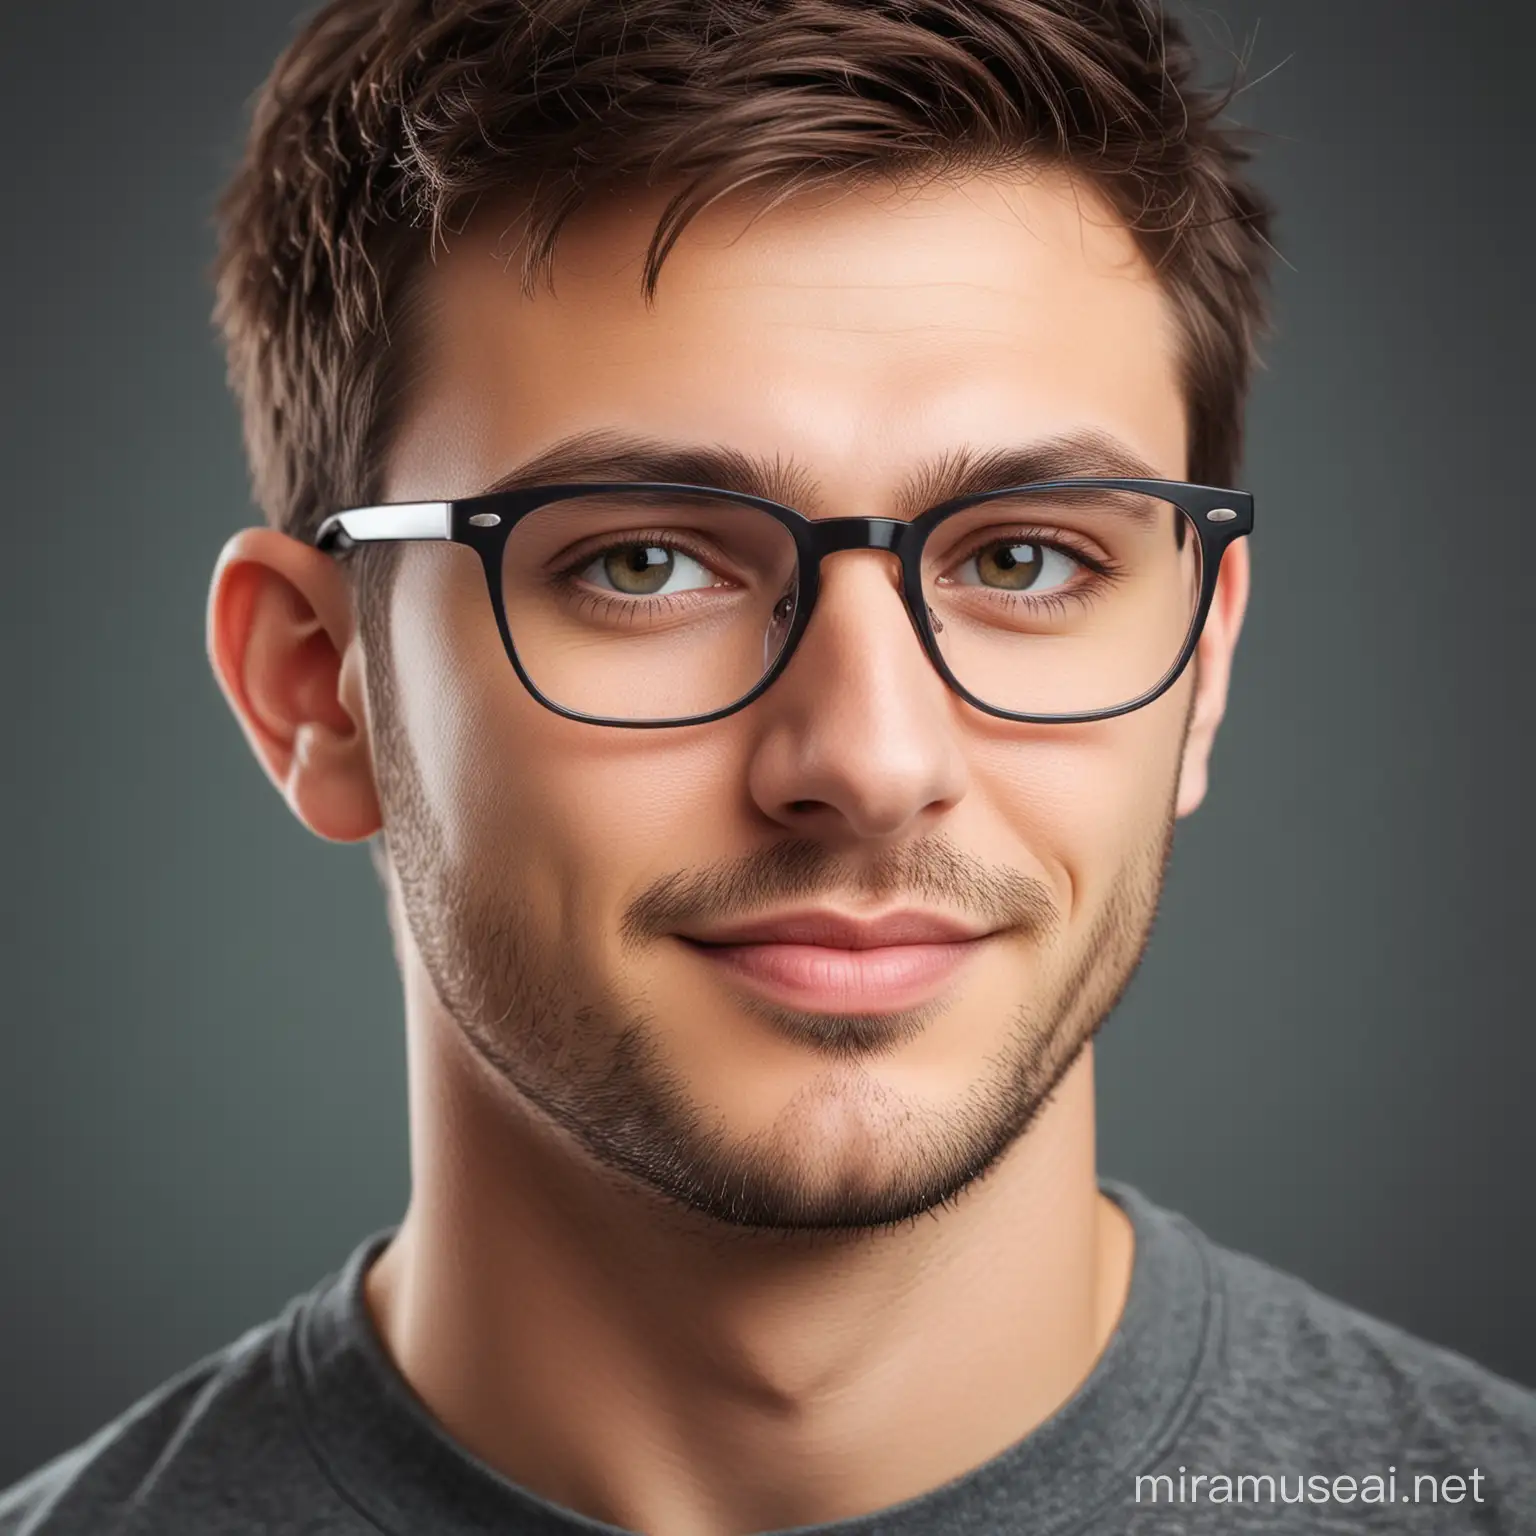 Handsome Software Developer Wearing Glasses at Work